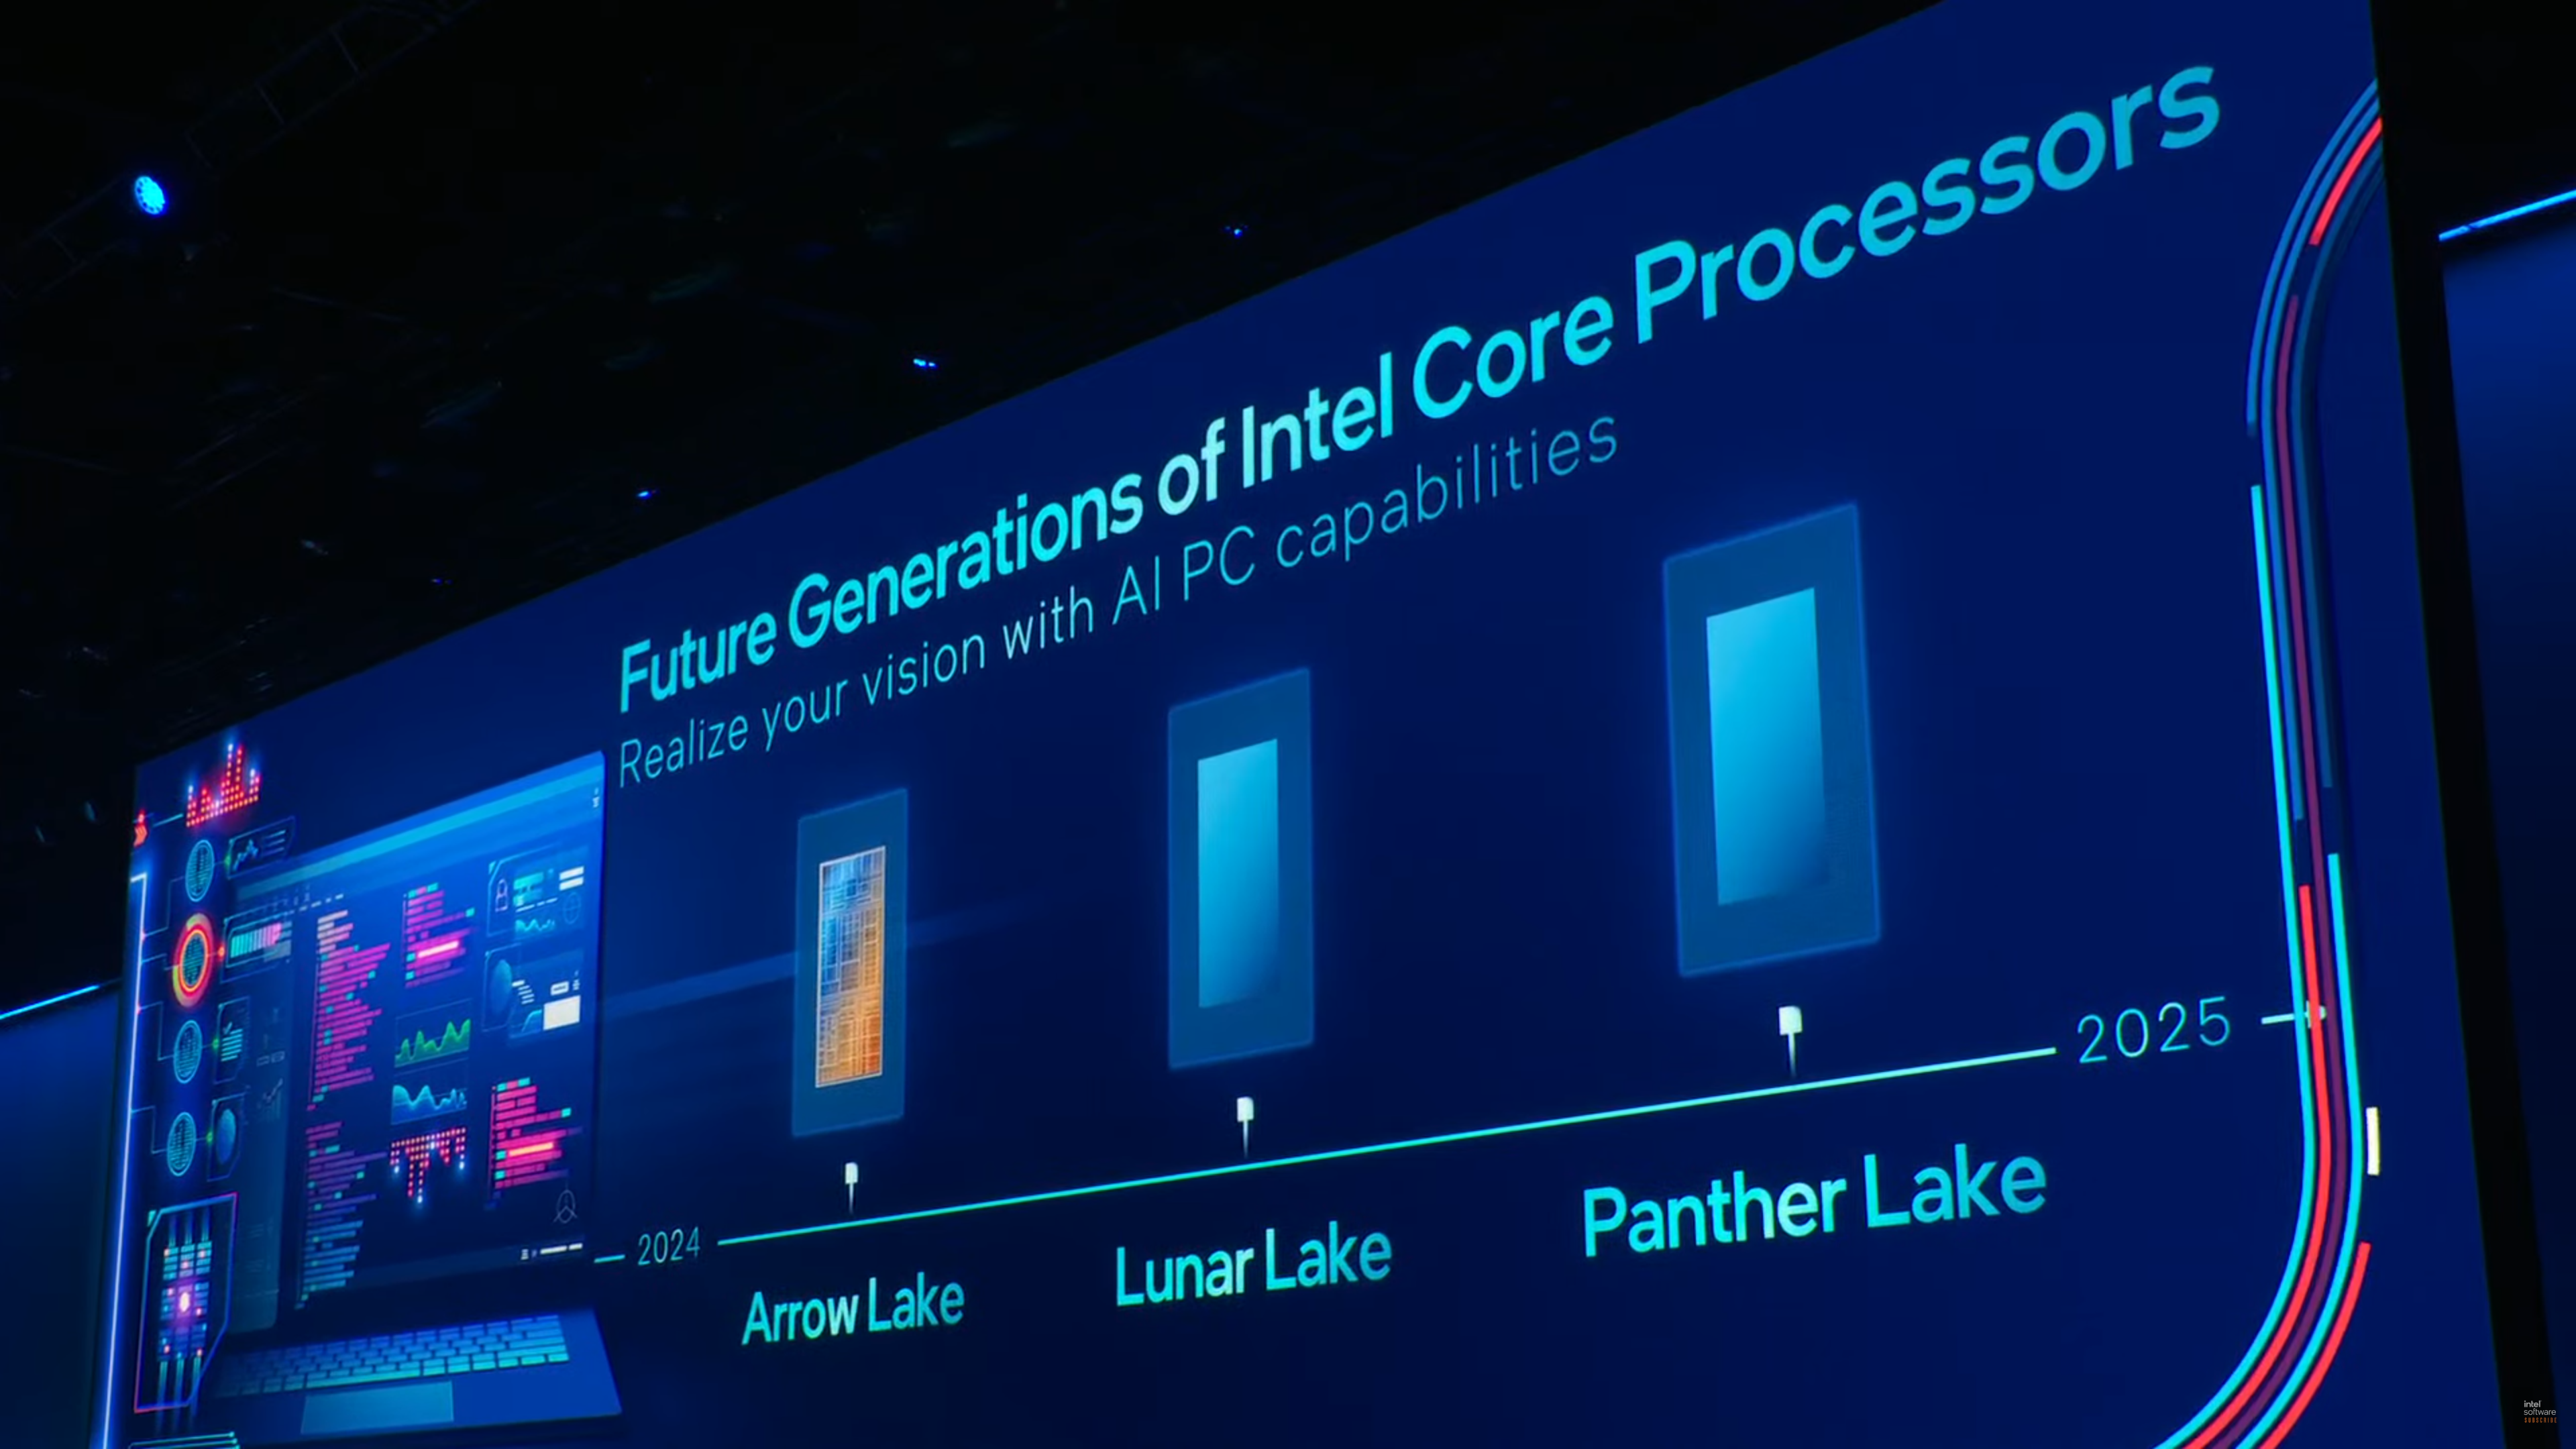 Intel-Arrow-Lake-Lunar-Lake-Panther-Lake-CPUs-1.png